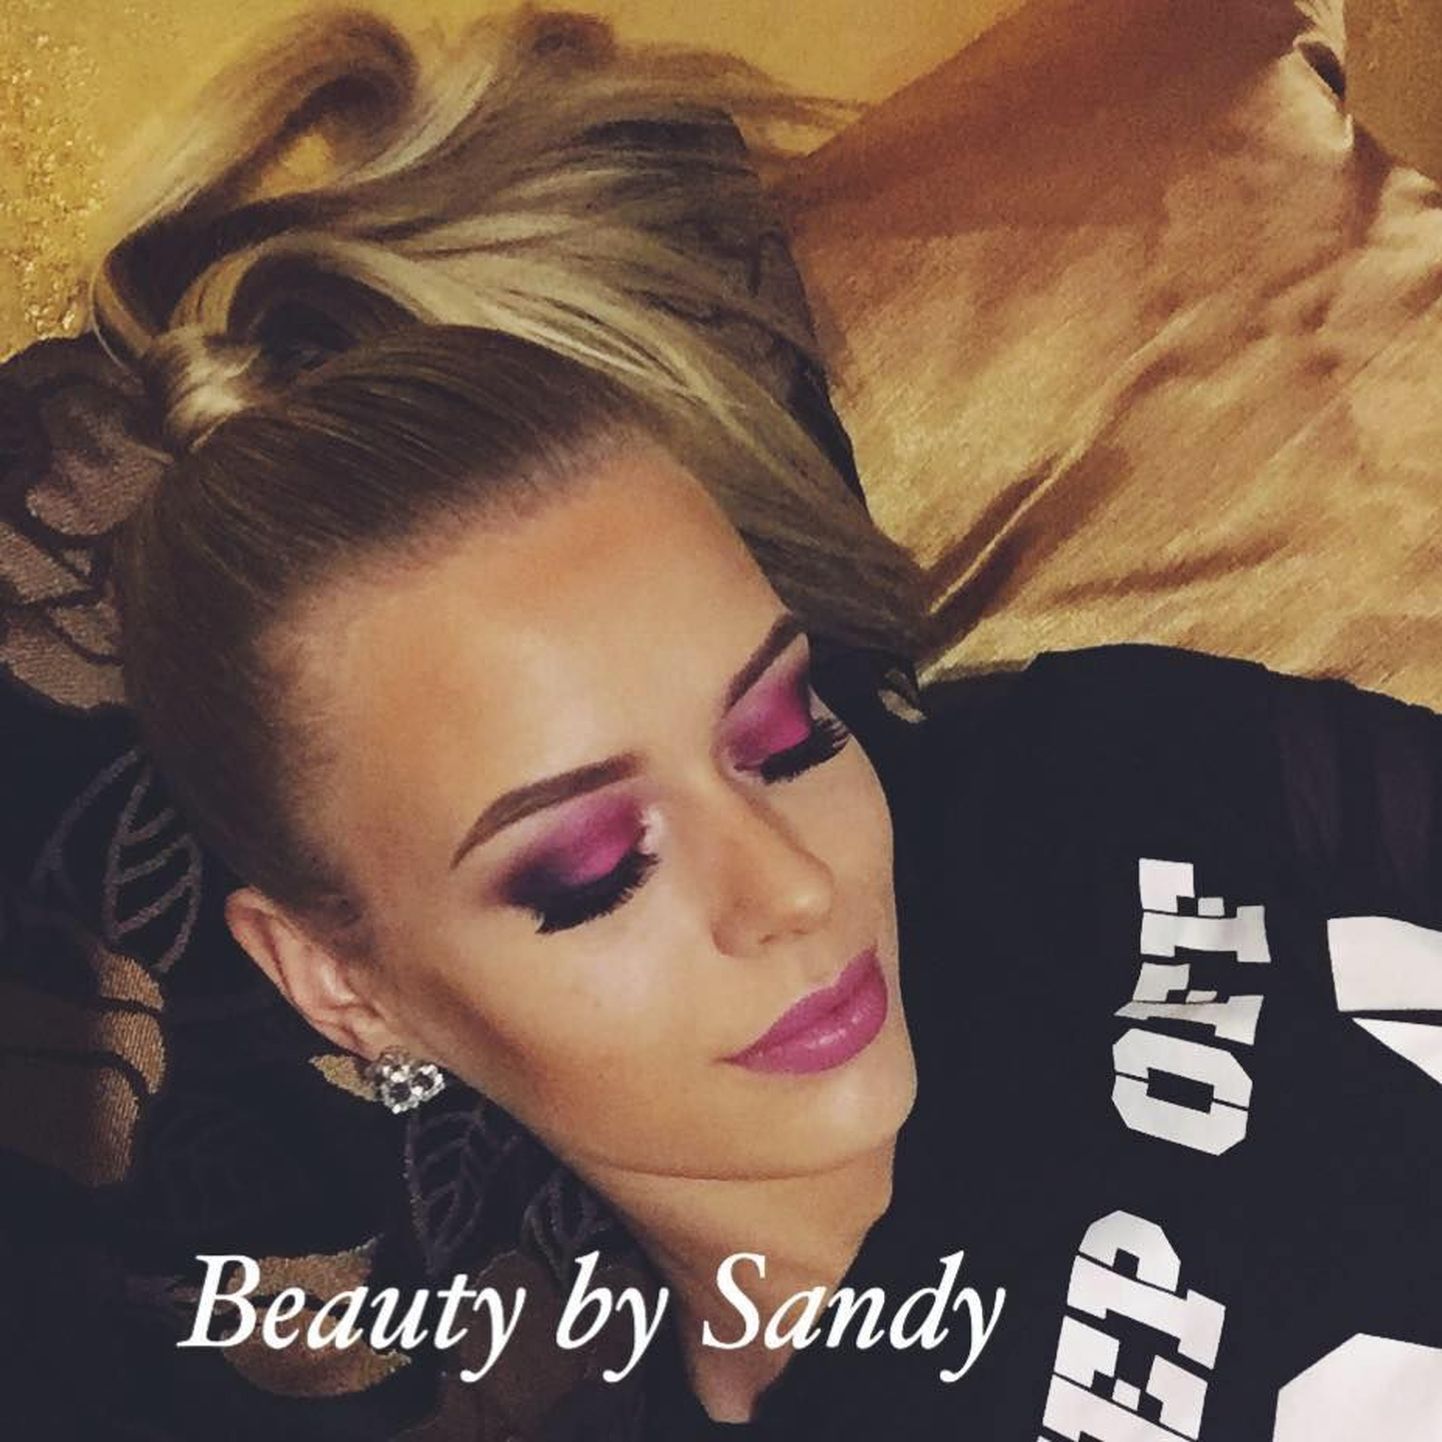 Beauty by Sandy, Sandra Ude